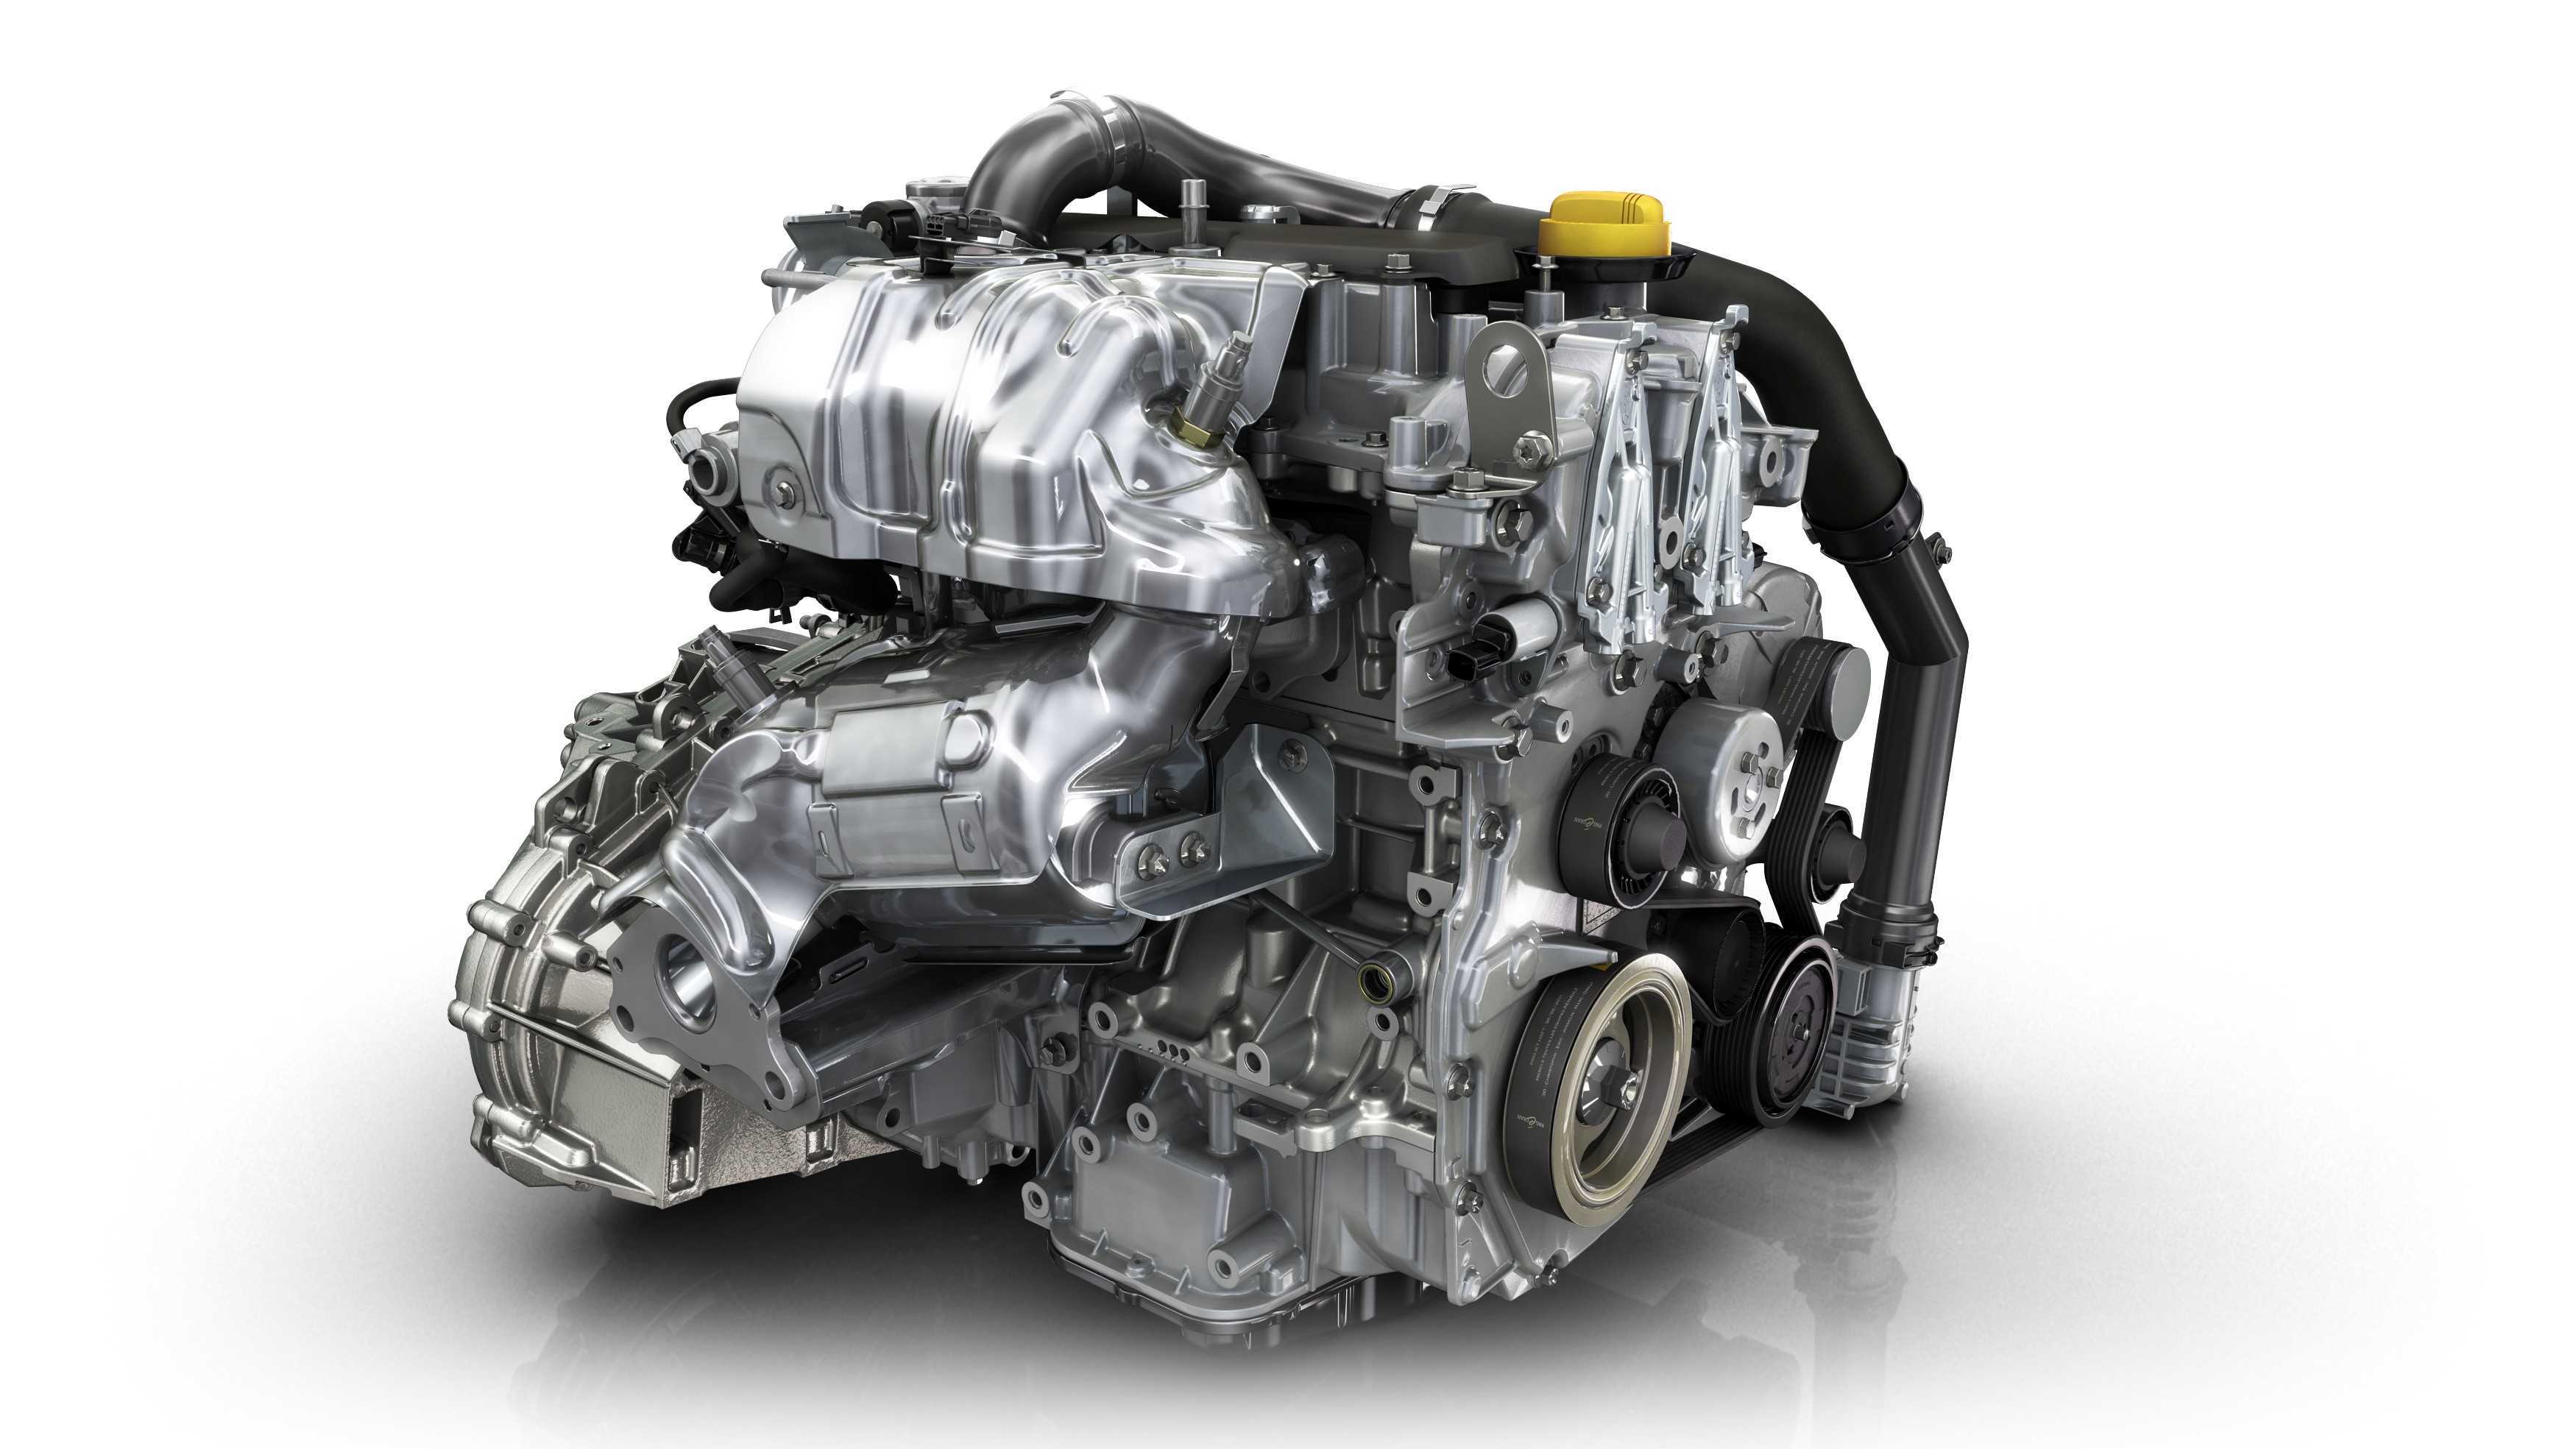 Дастер 1.3 турбо масло. Двигатель Renault 1.3 TCE. 1.3 Турбо мотор Рено. H5ht 1.3 TCE 150. Мотор Renault h5h TCE.